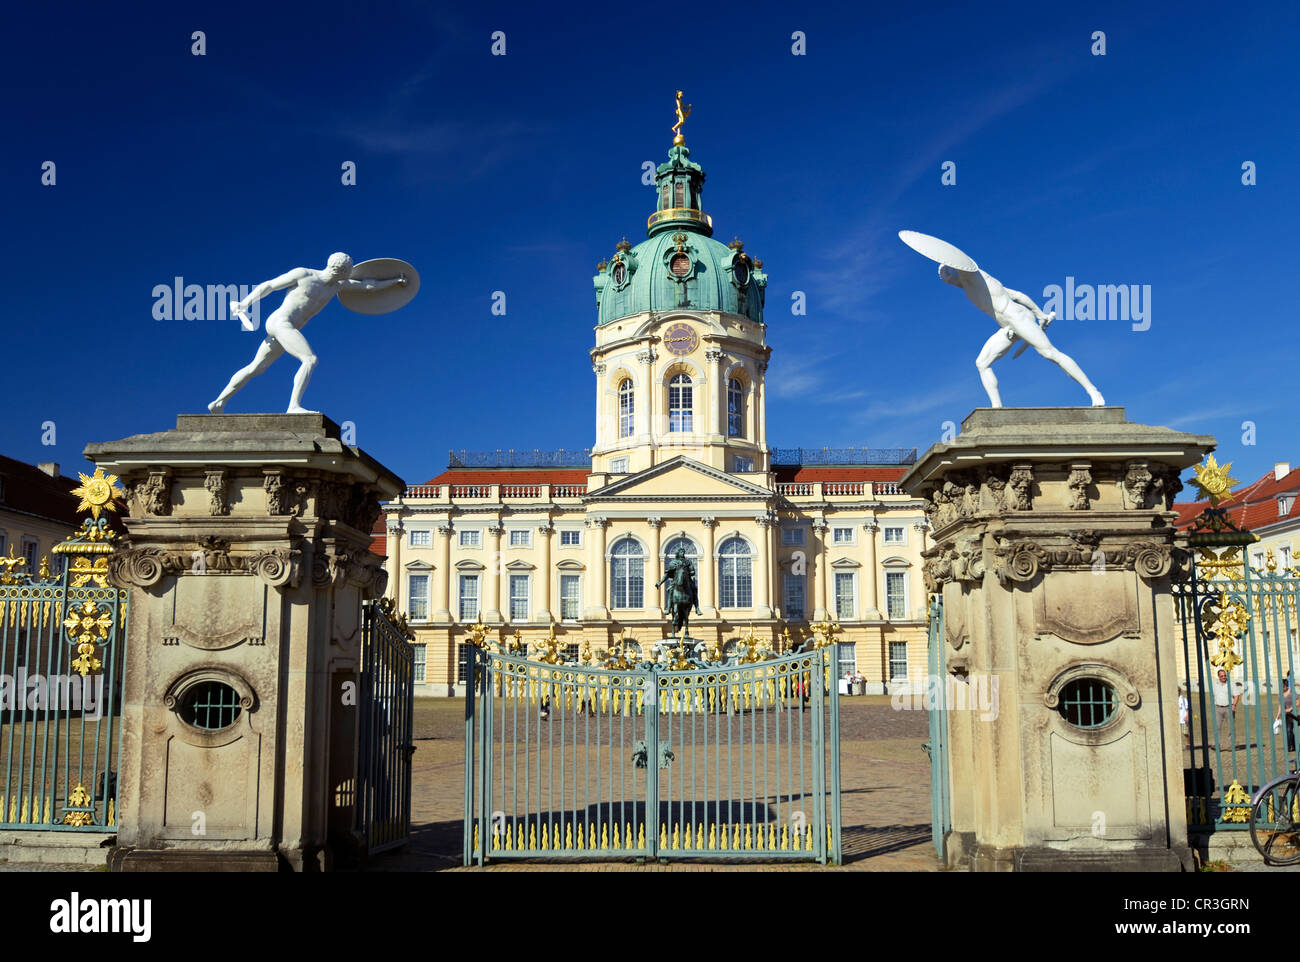 Schloss Charlottenburg Palace, Charlottenburg Wilmersdorf, Berlin, Germany, Europe Stock Photo